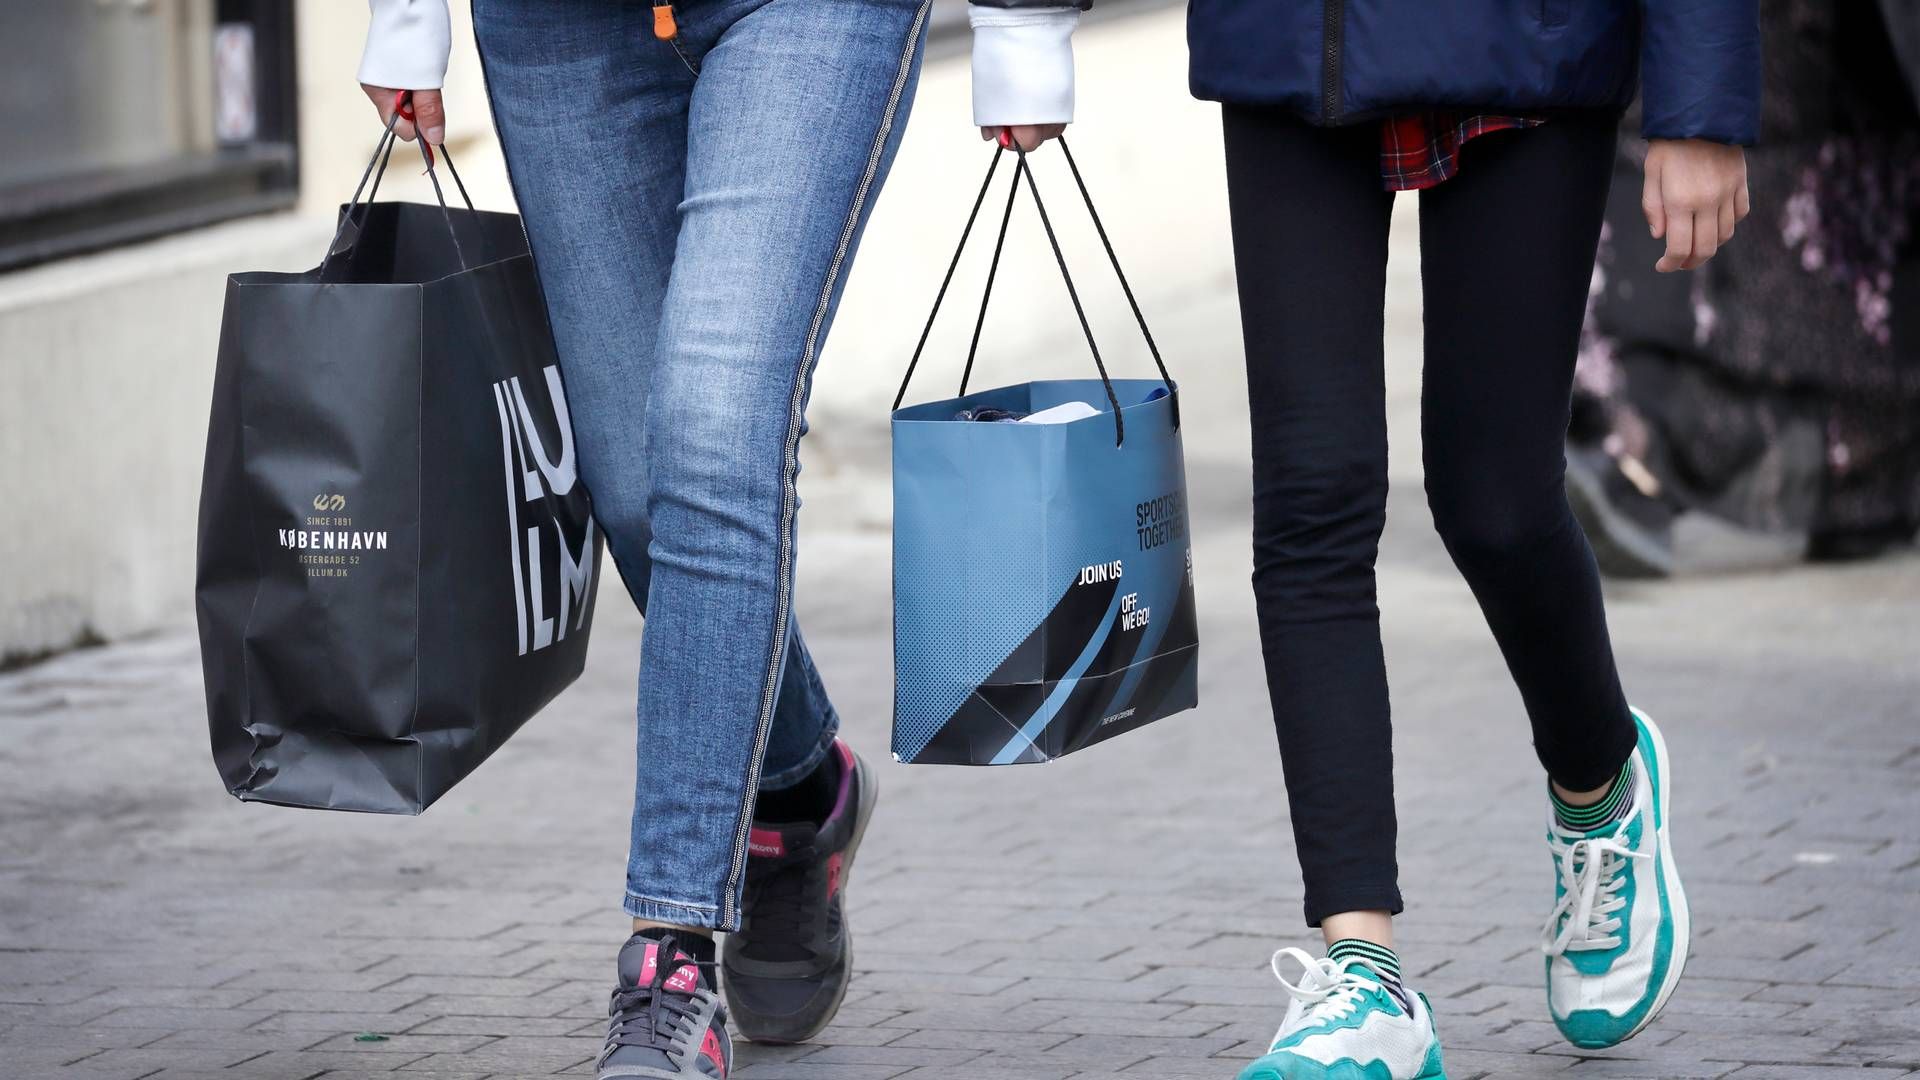 Forbrugertilliden steg en smule i marts, men er stadig langt fra at være i plus. | Foto: Jens Dresling